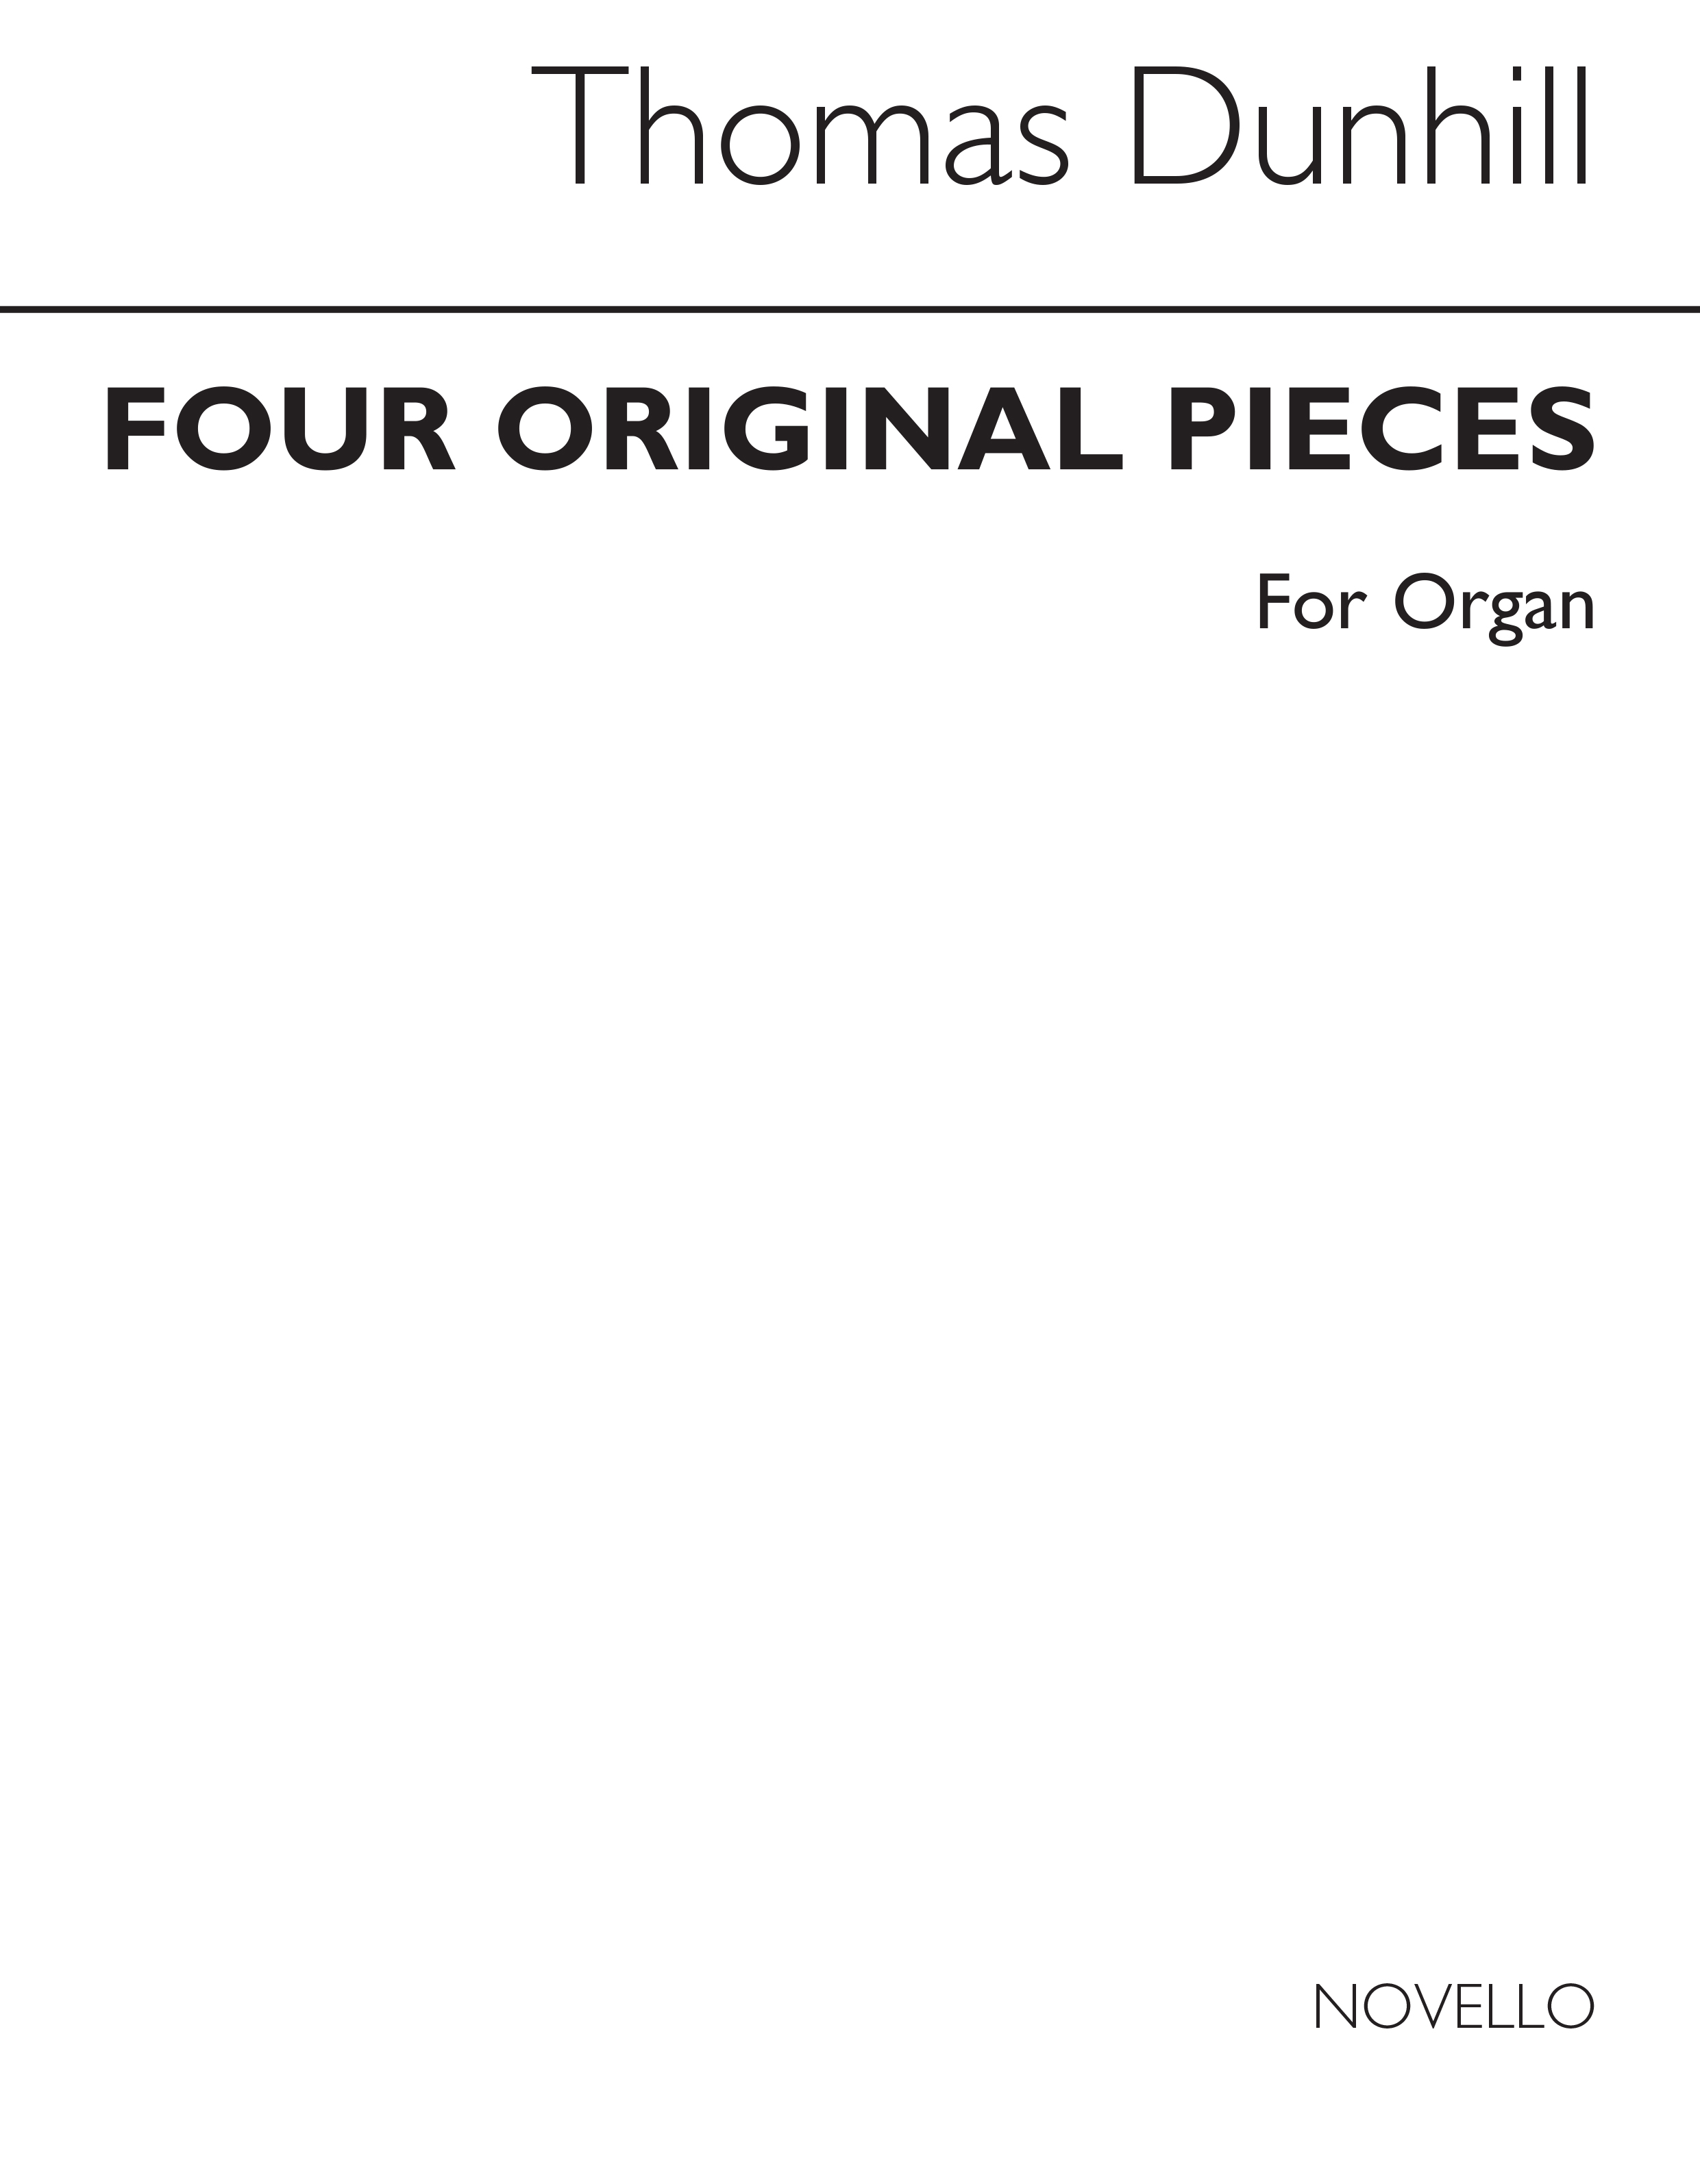 Dunhill: Four Original Pieces for Organ